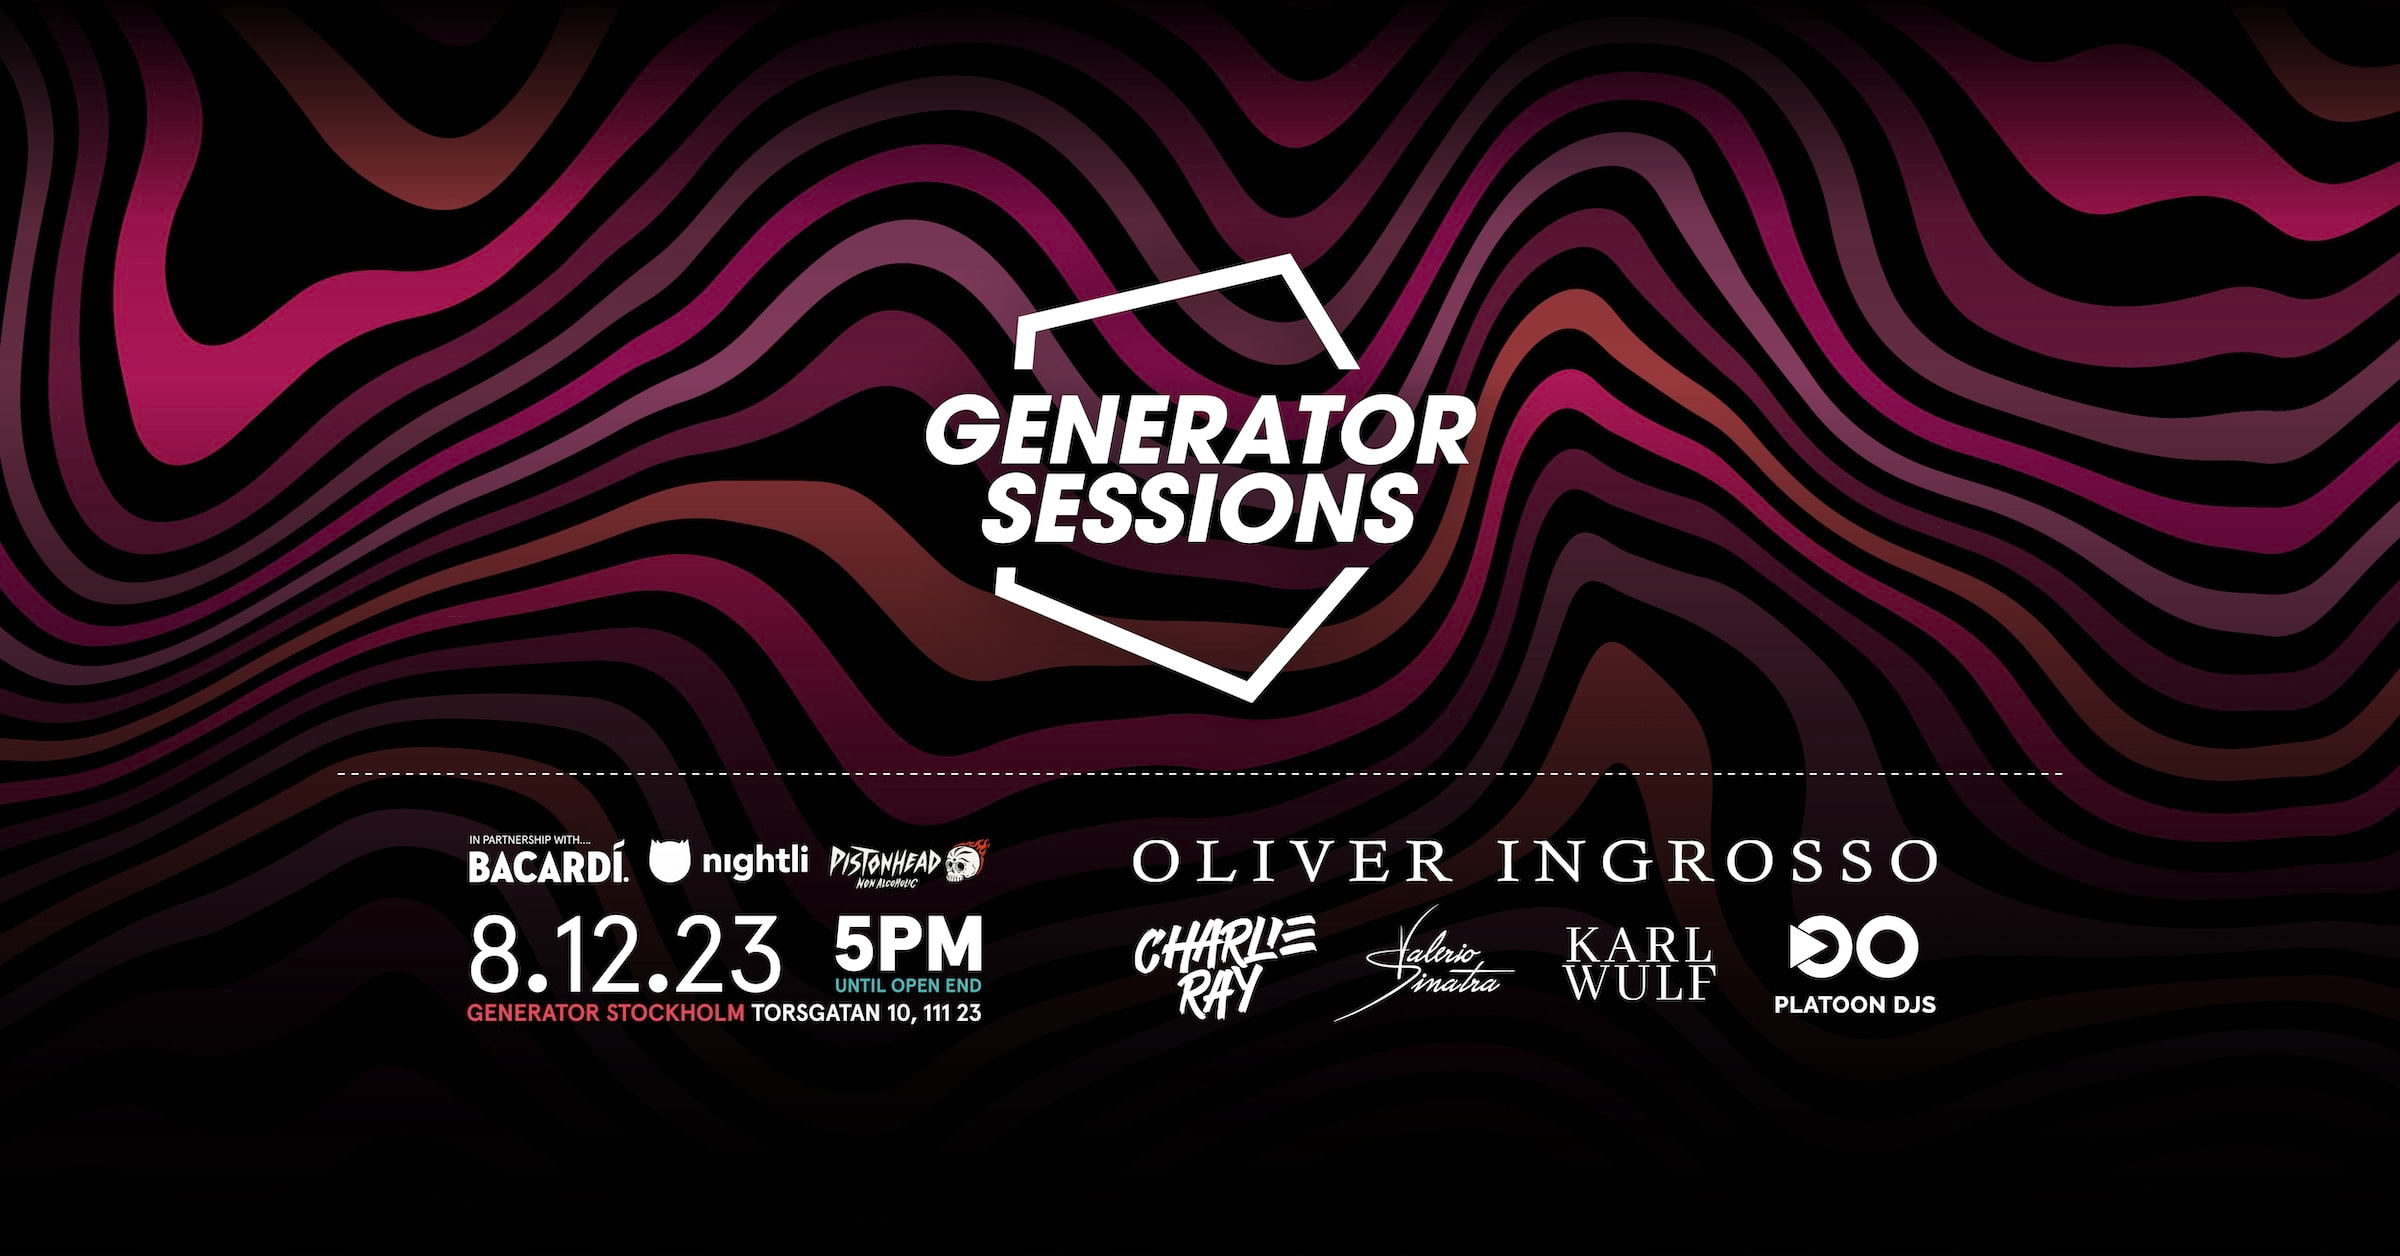 Generator Sessions besöker Stockholm – bjuder in Oliver Ingrosso